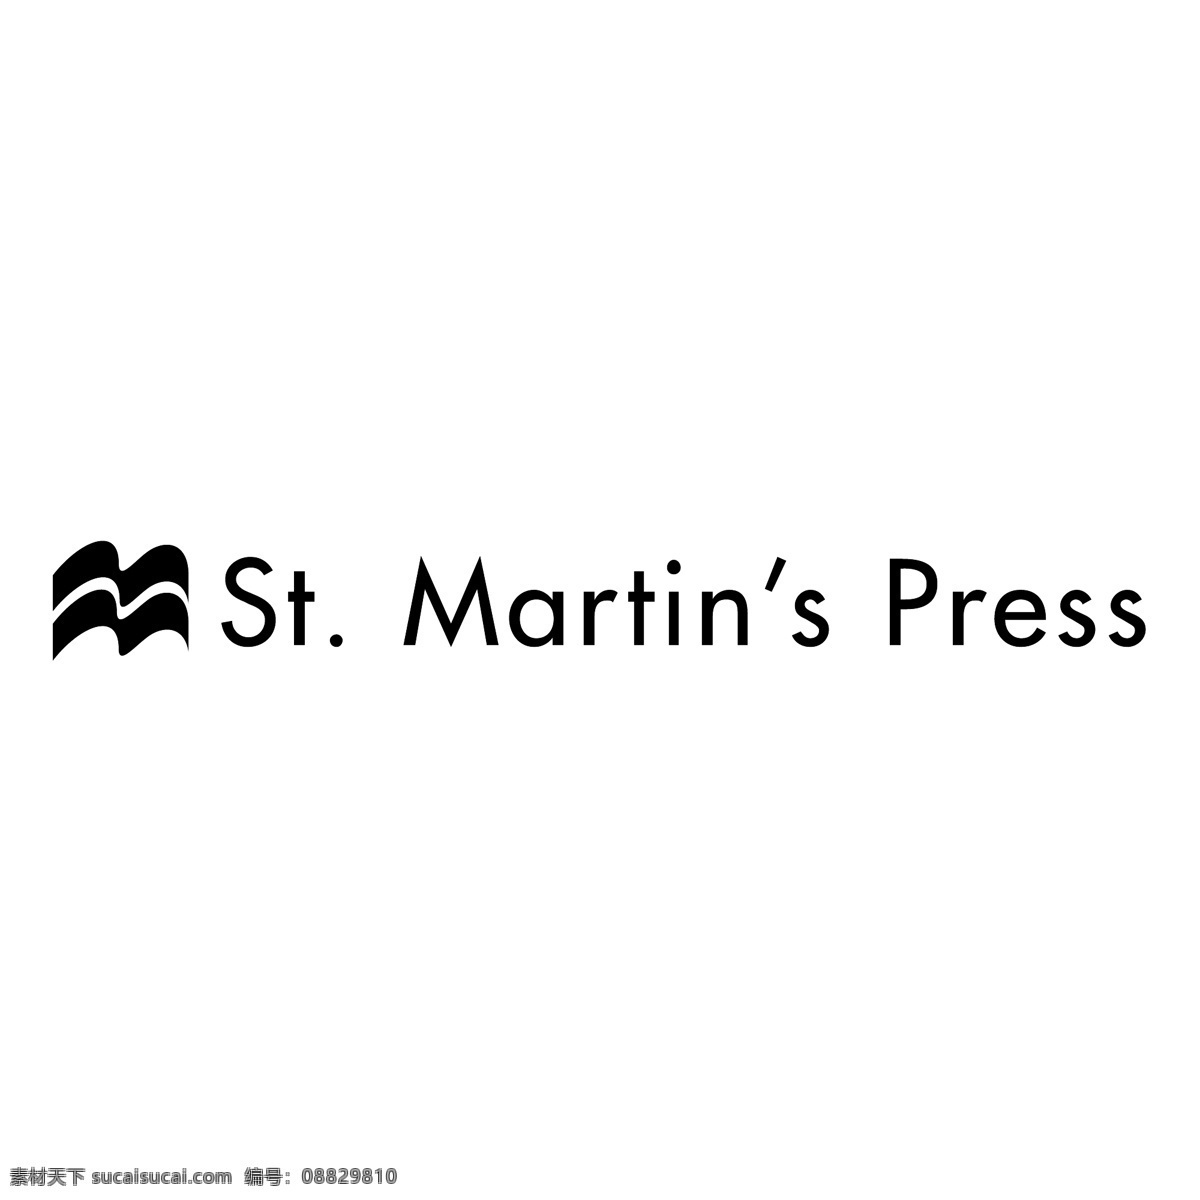 圣马丁 出版社 免费 标志 psd源文件 logo设计